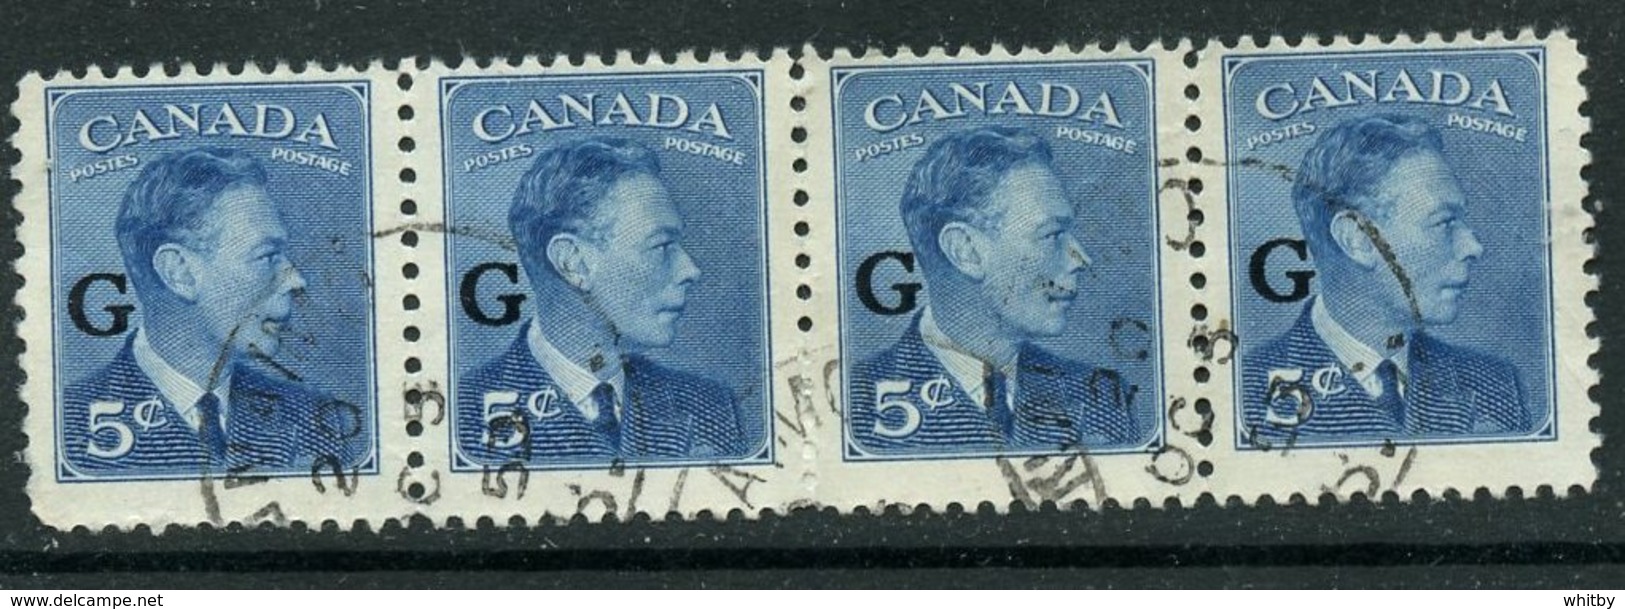 Canada 1950 5 Cent King George VI G Overprint Issue #O20 Strip Of 4 - Aufdrucksausgaben